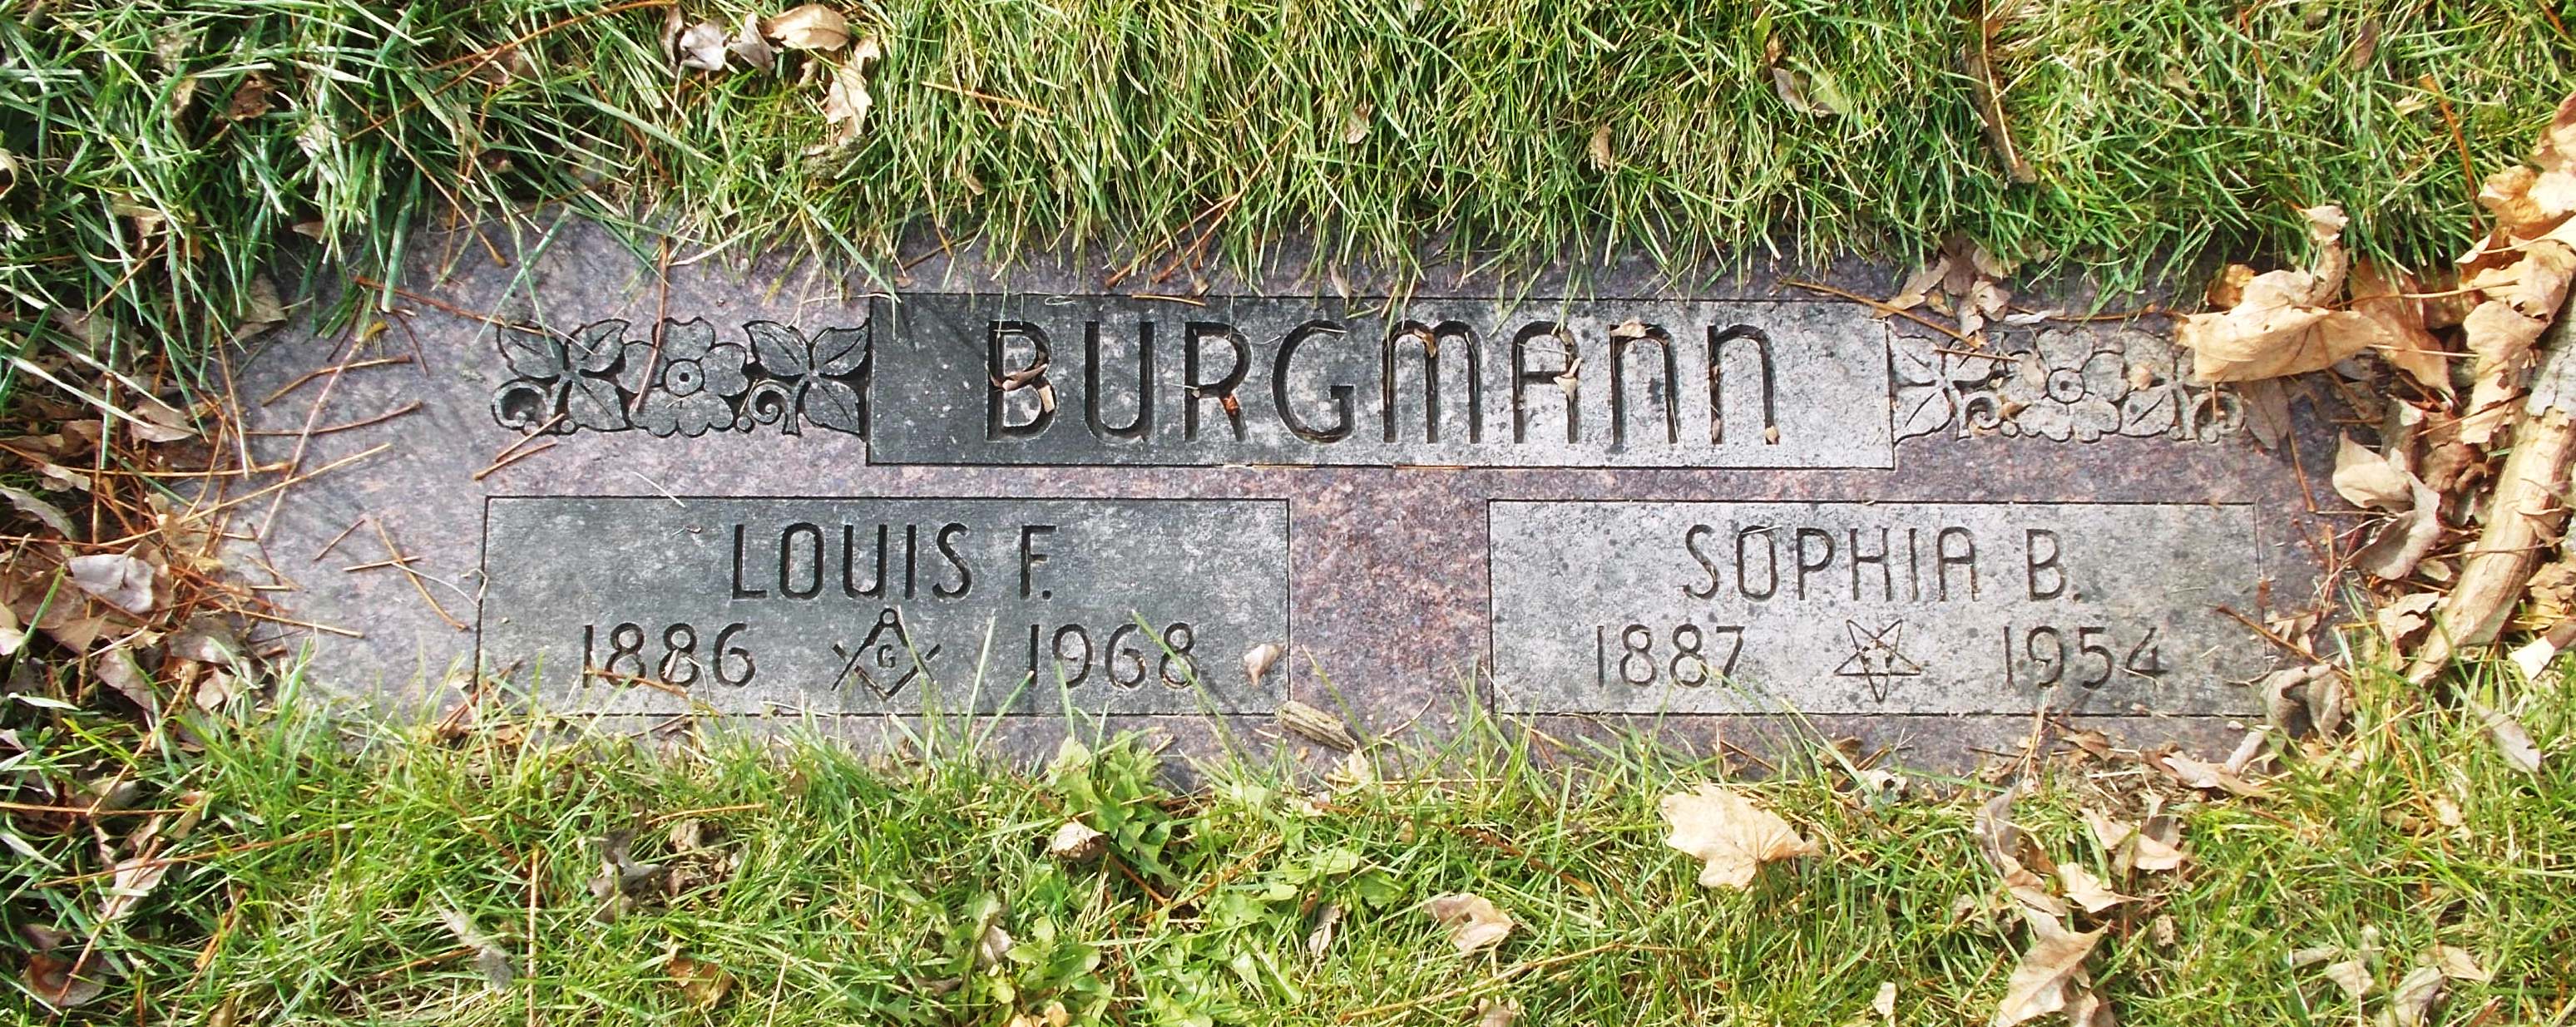 Sophia B Burgmann